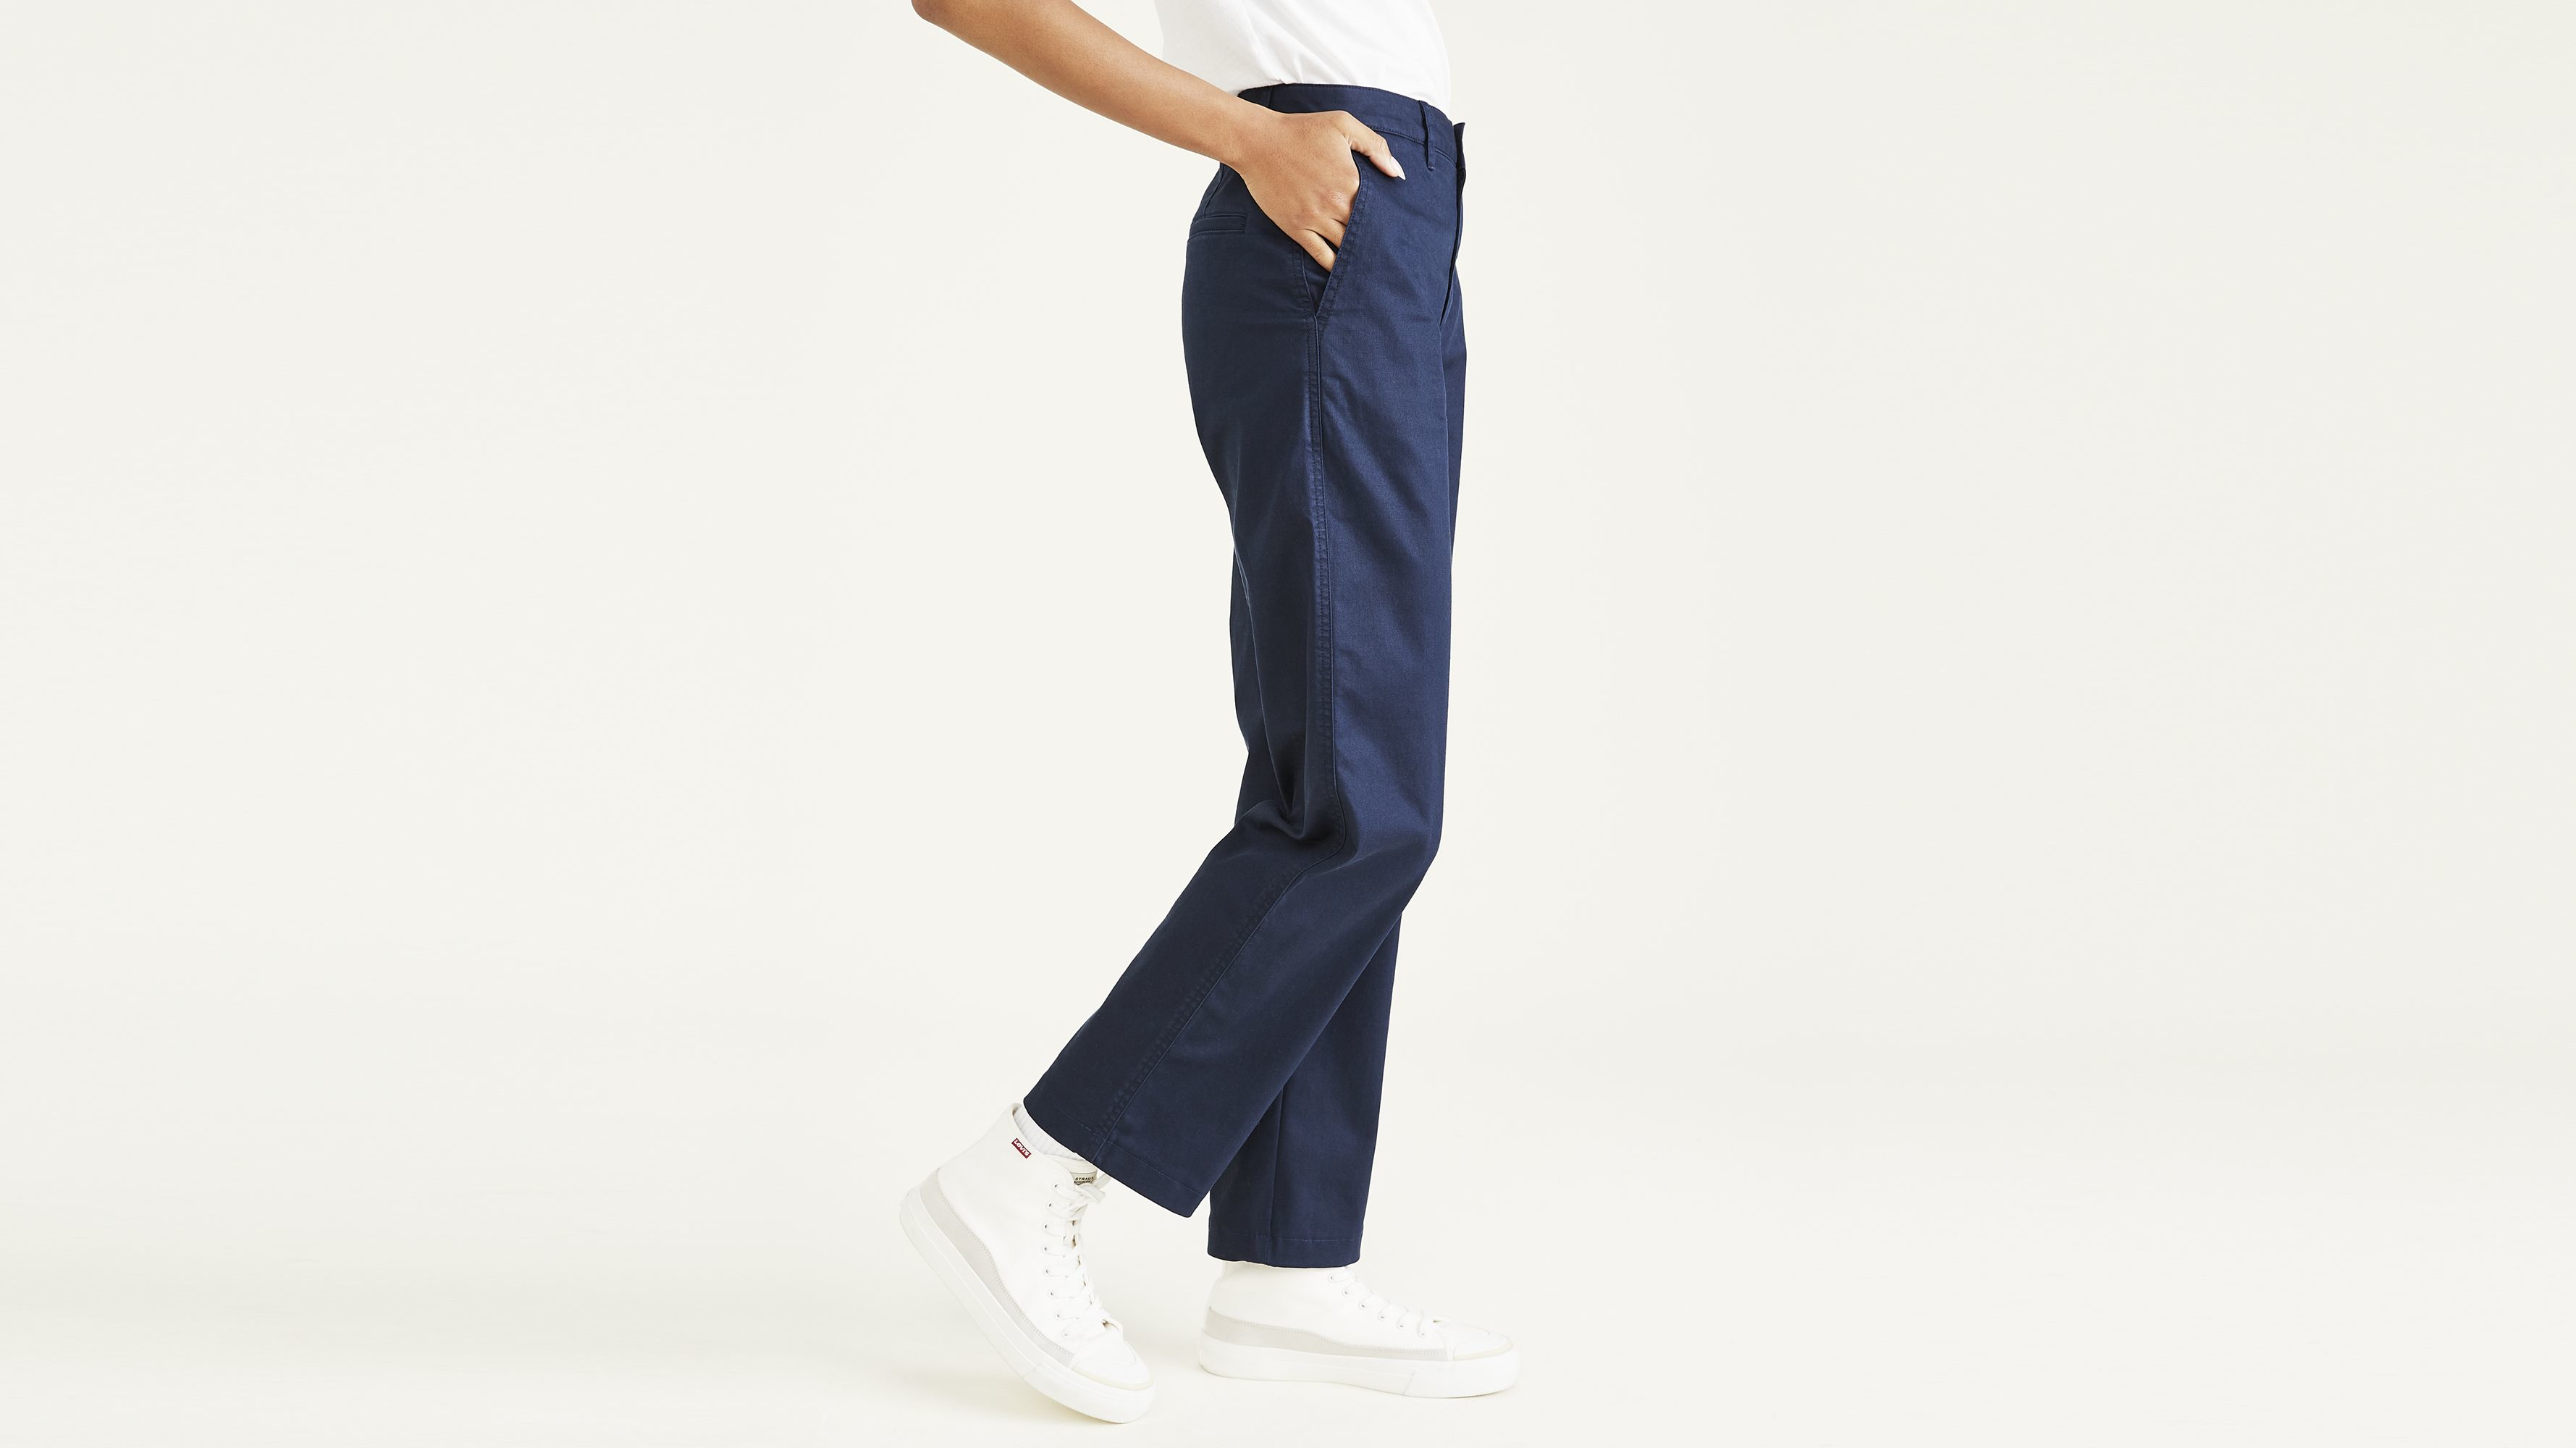 Dockers women's slacks pants size 10 med gray striped hooks zipper READ